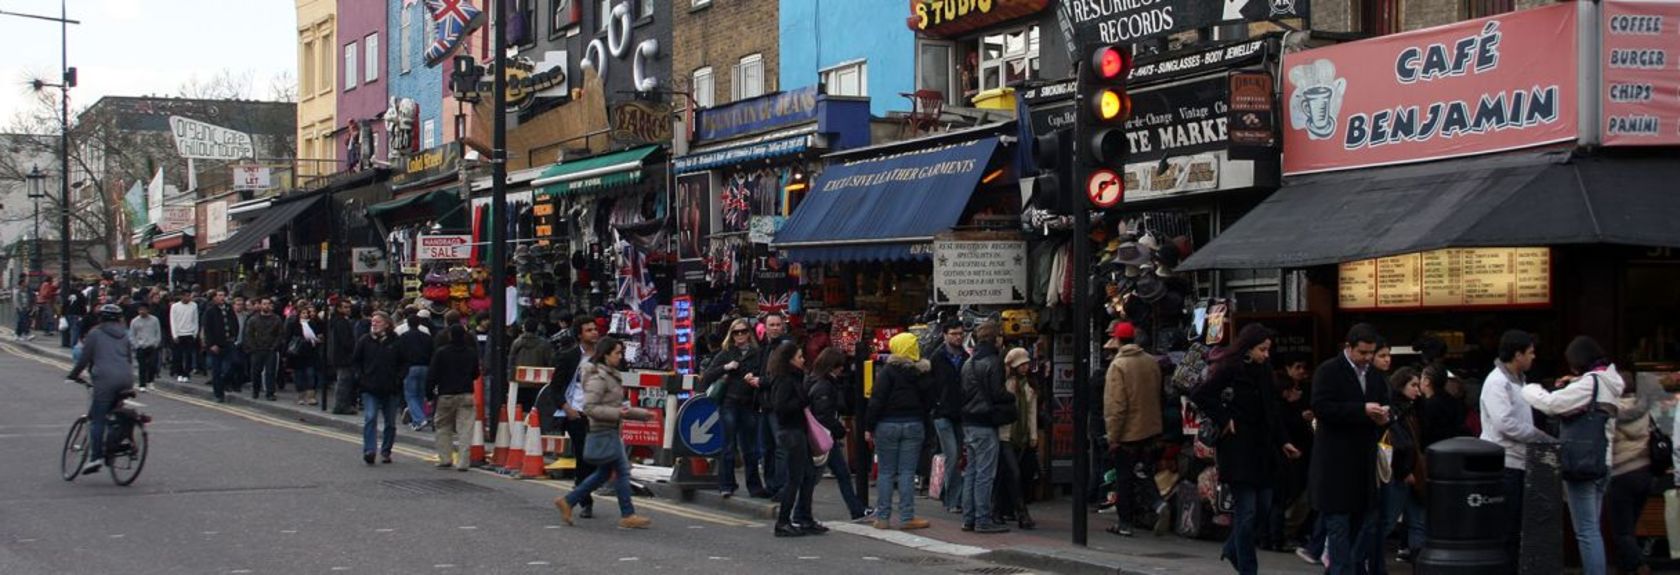 Um bairro popular na área da Grande Londres é Camden Town. Este distrito está localizado ao norte do centro da cidade e deve sua popularidade principalmente ao Camden Market que é organizado aqui todos os fins de semana